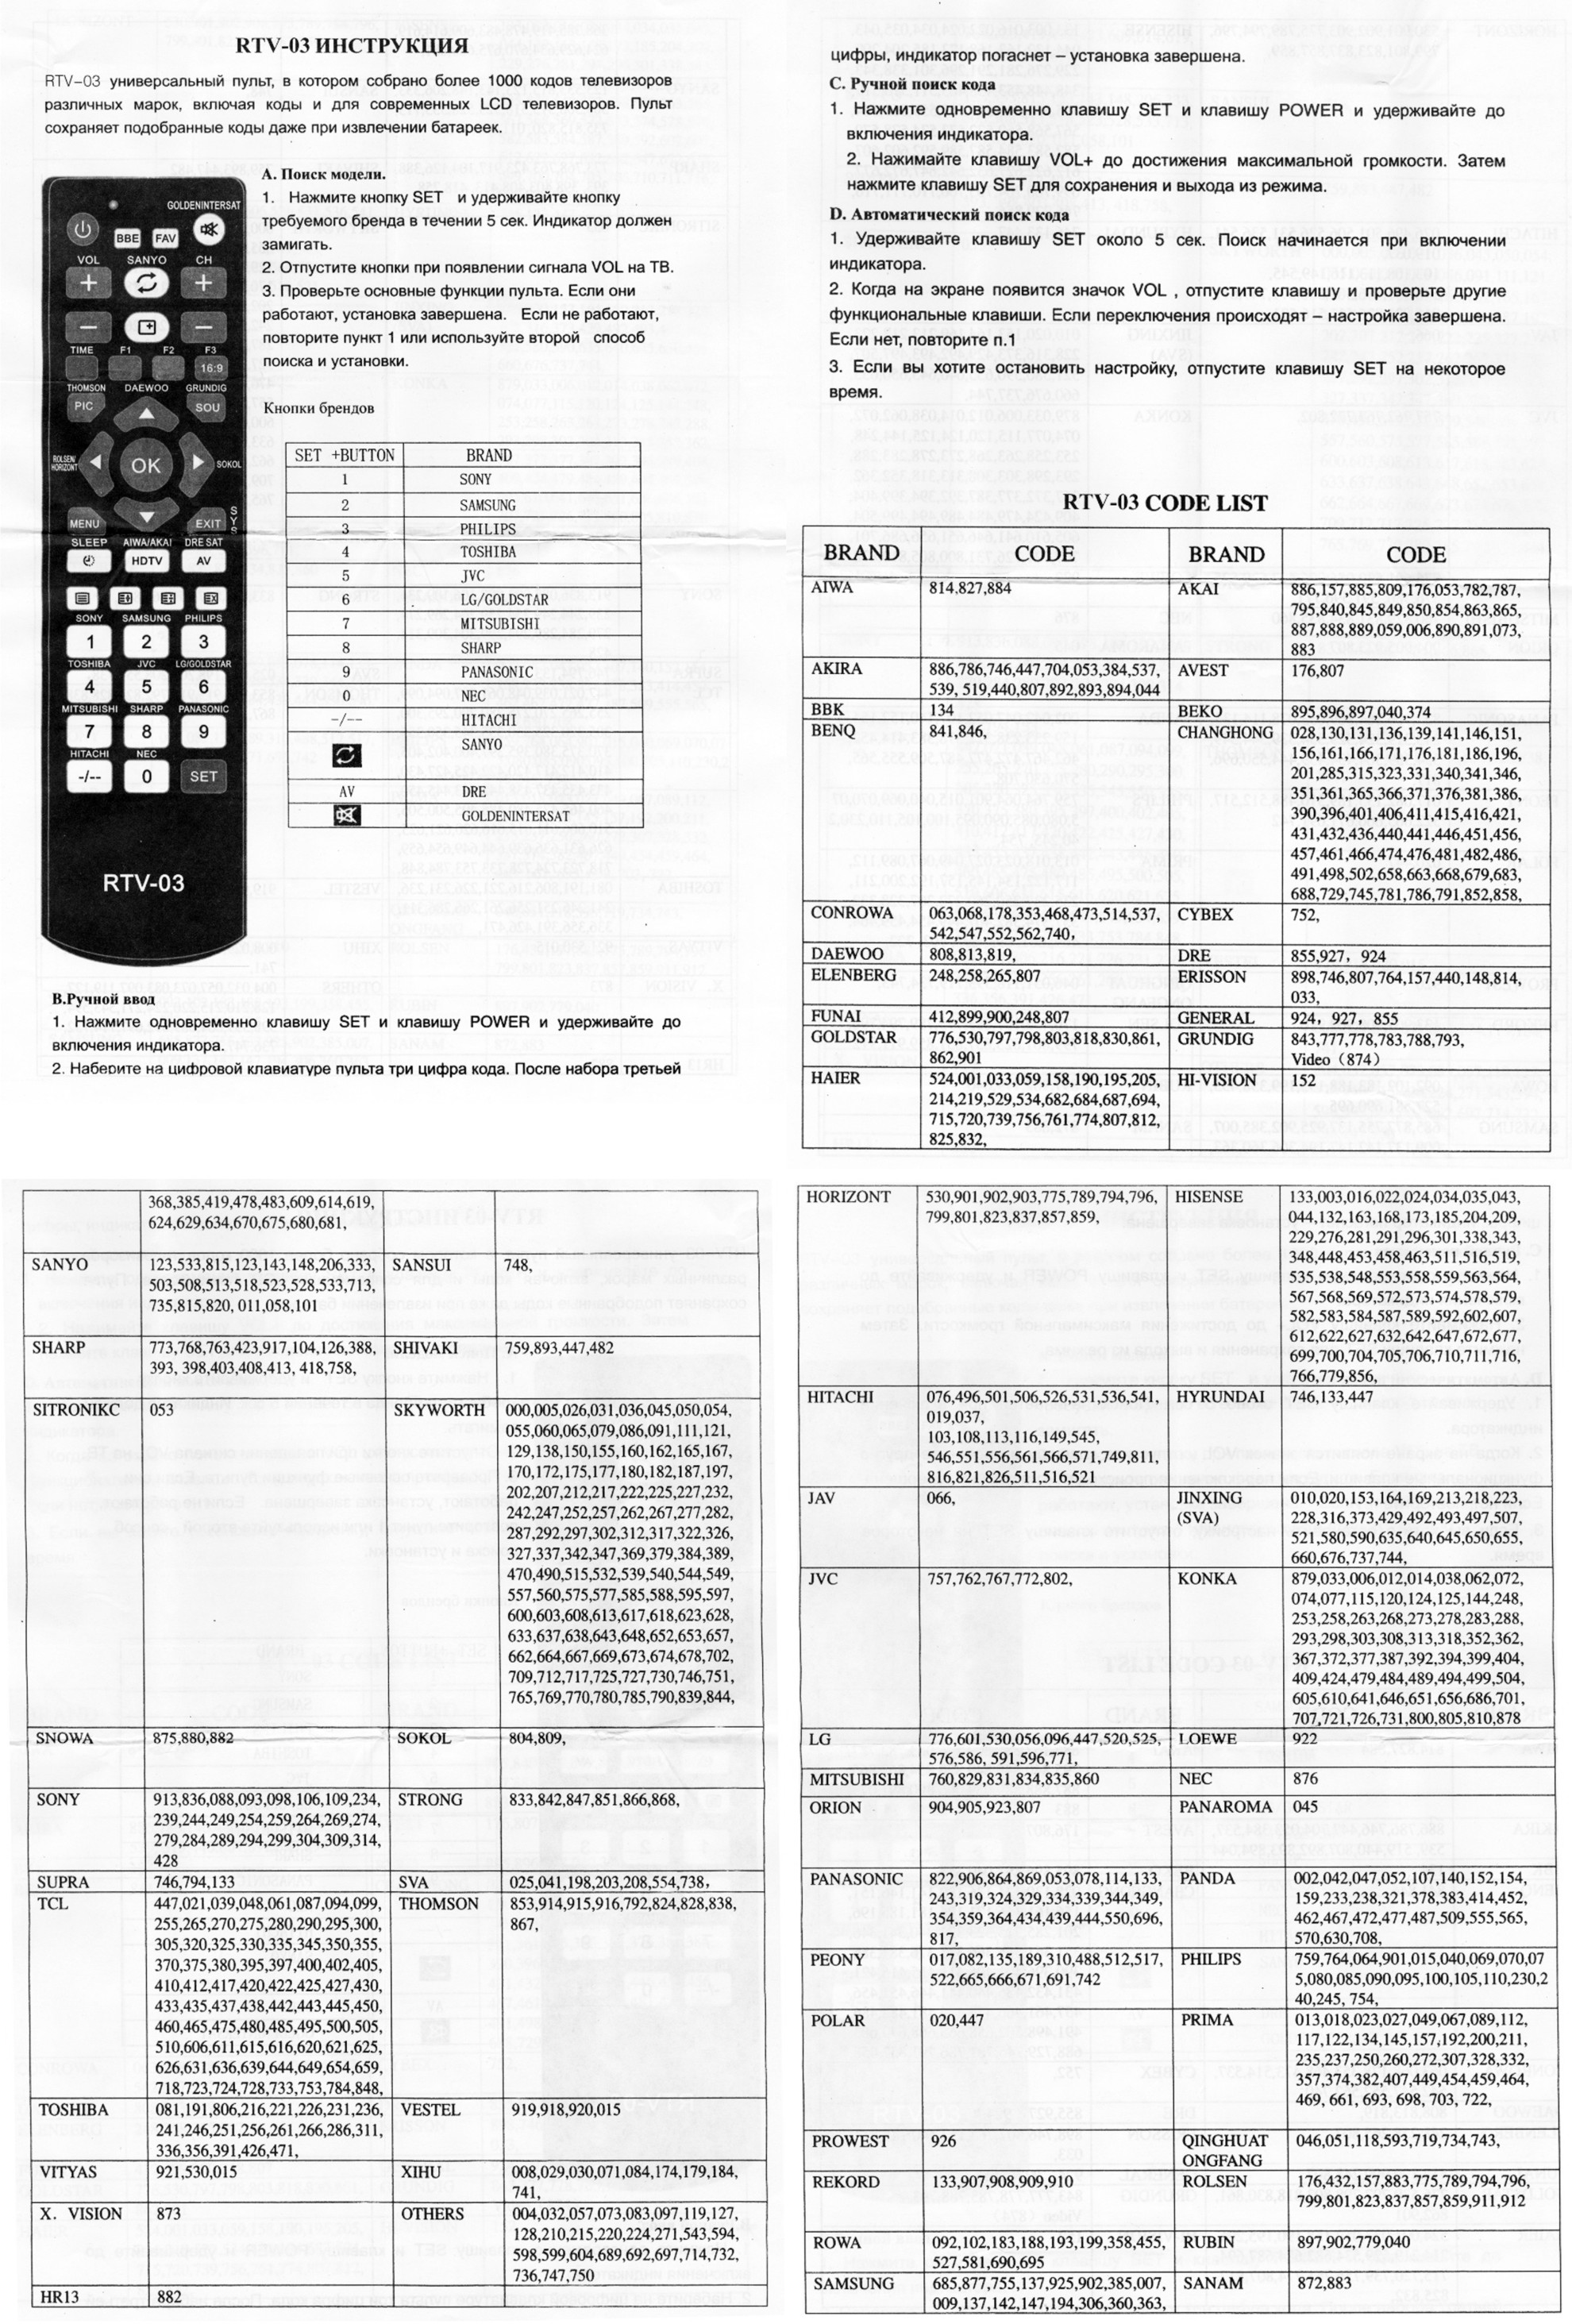 Как настроить универсальный пульт tv. Коды для универсального пульта для телевизора Sanyo. Коды для универсального пульта для телевизора Daewoo. Универсальный пульт для телевизора DZ-498 коды. Универсальный пульт RTV-03 для телевизора коды для Sharp.